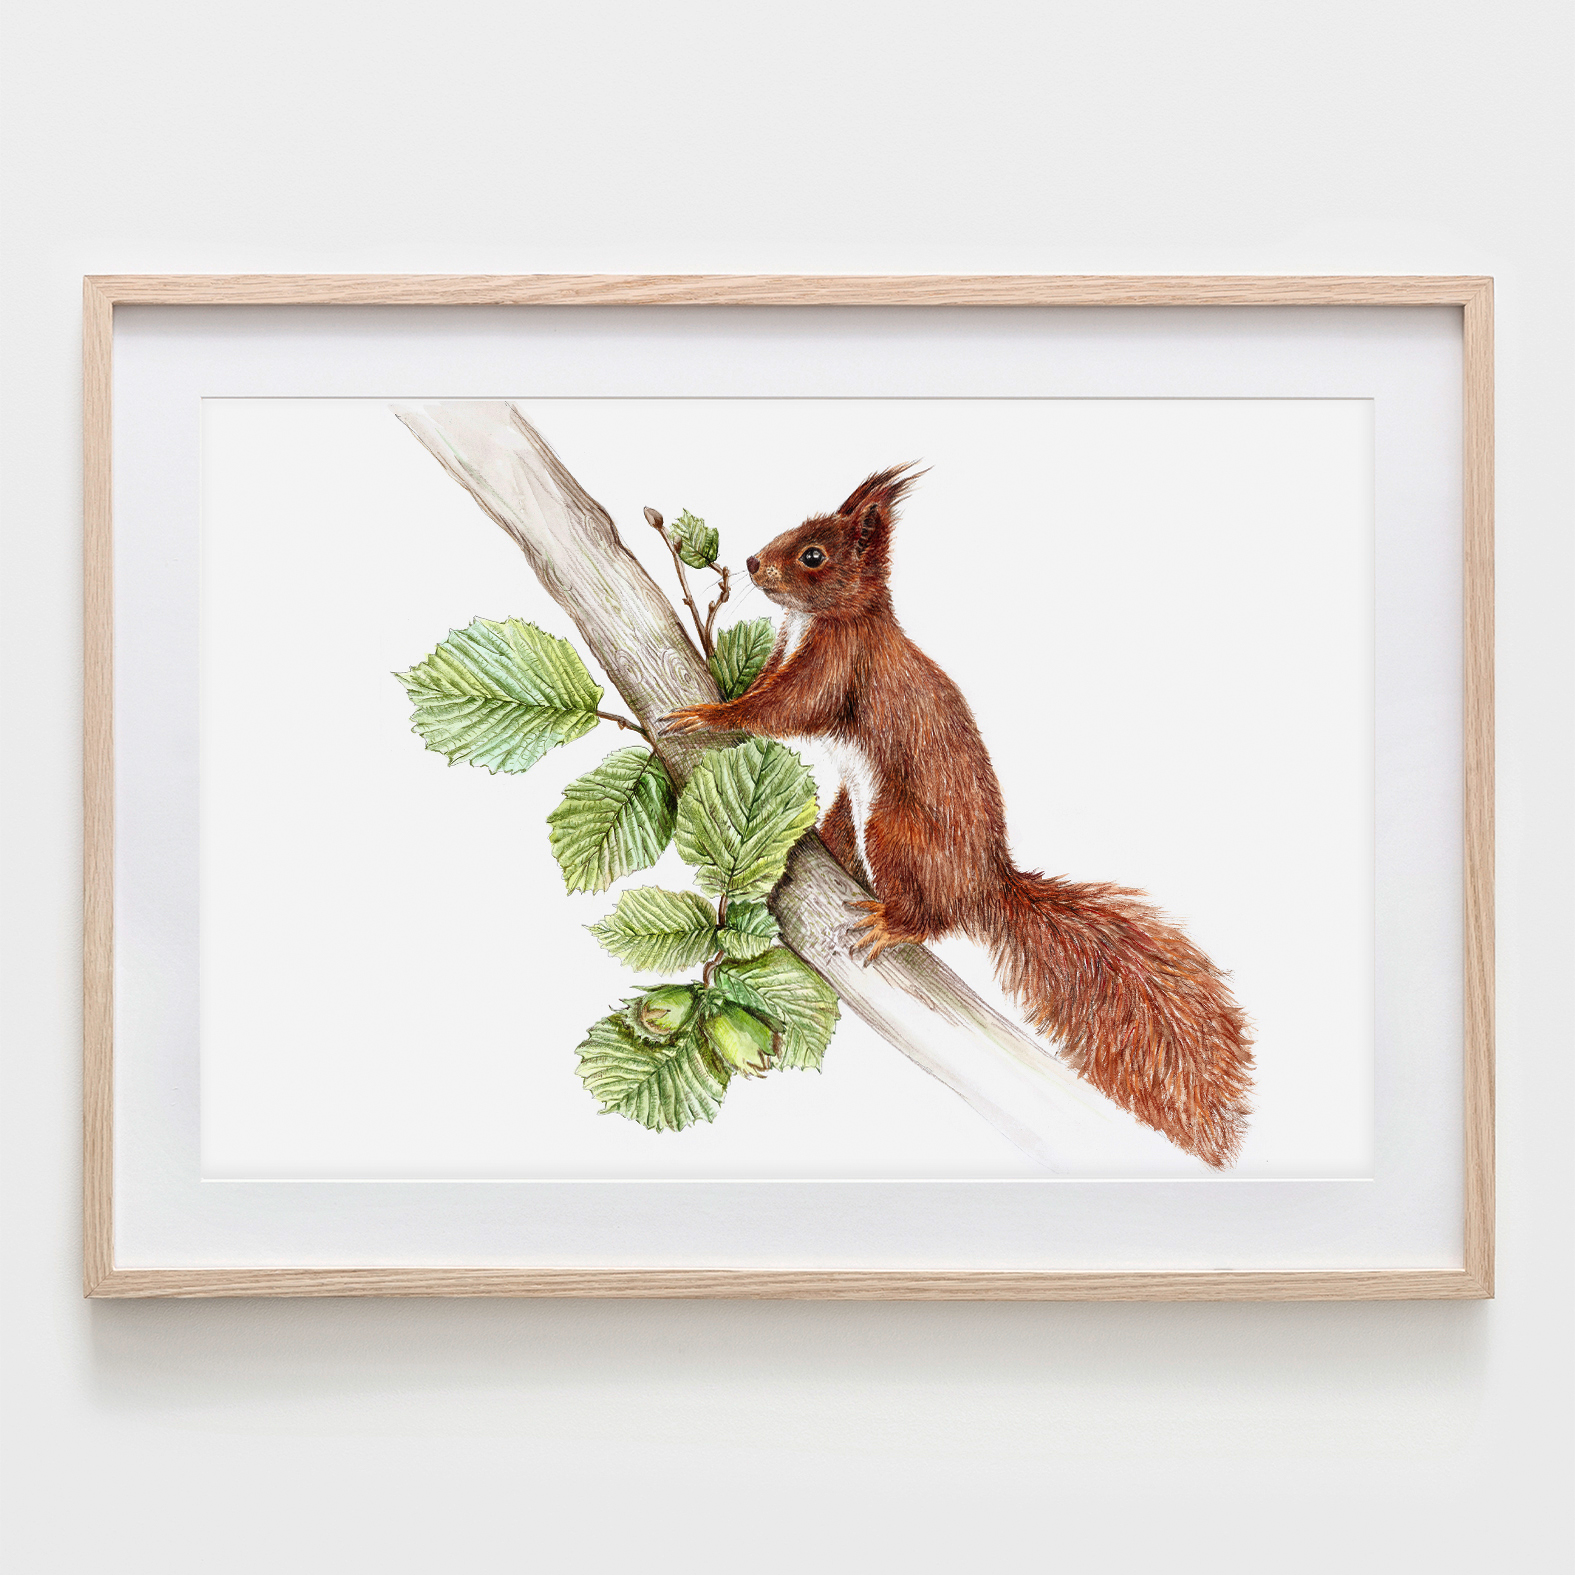 Eichhörnchen im Nussbaum, Fine Art Print, Giclée Print, Poster, Kunstdruck, Zeichnung